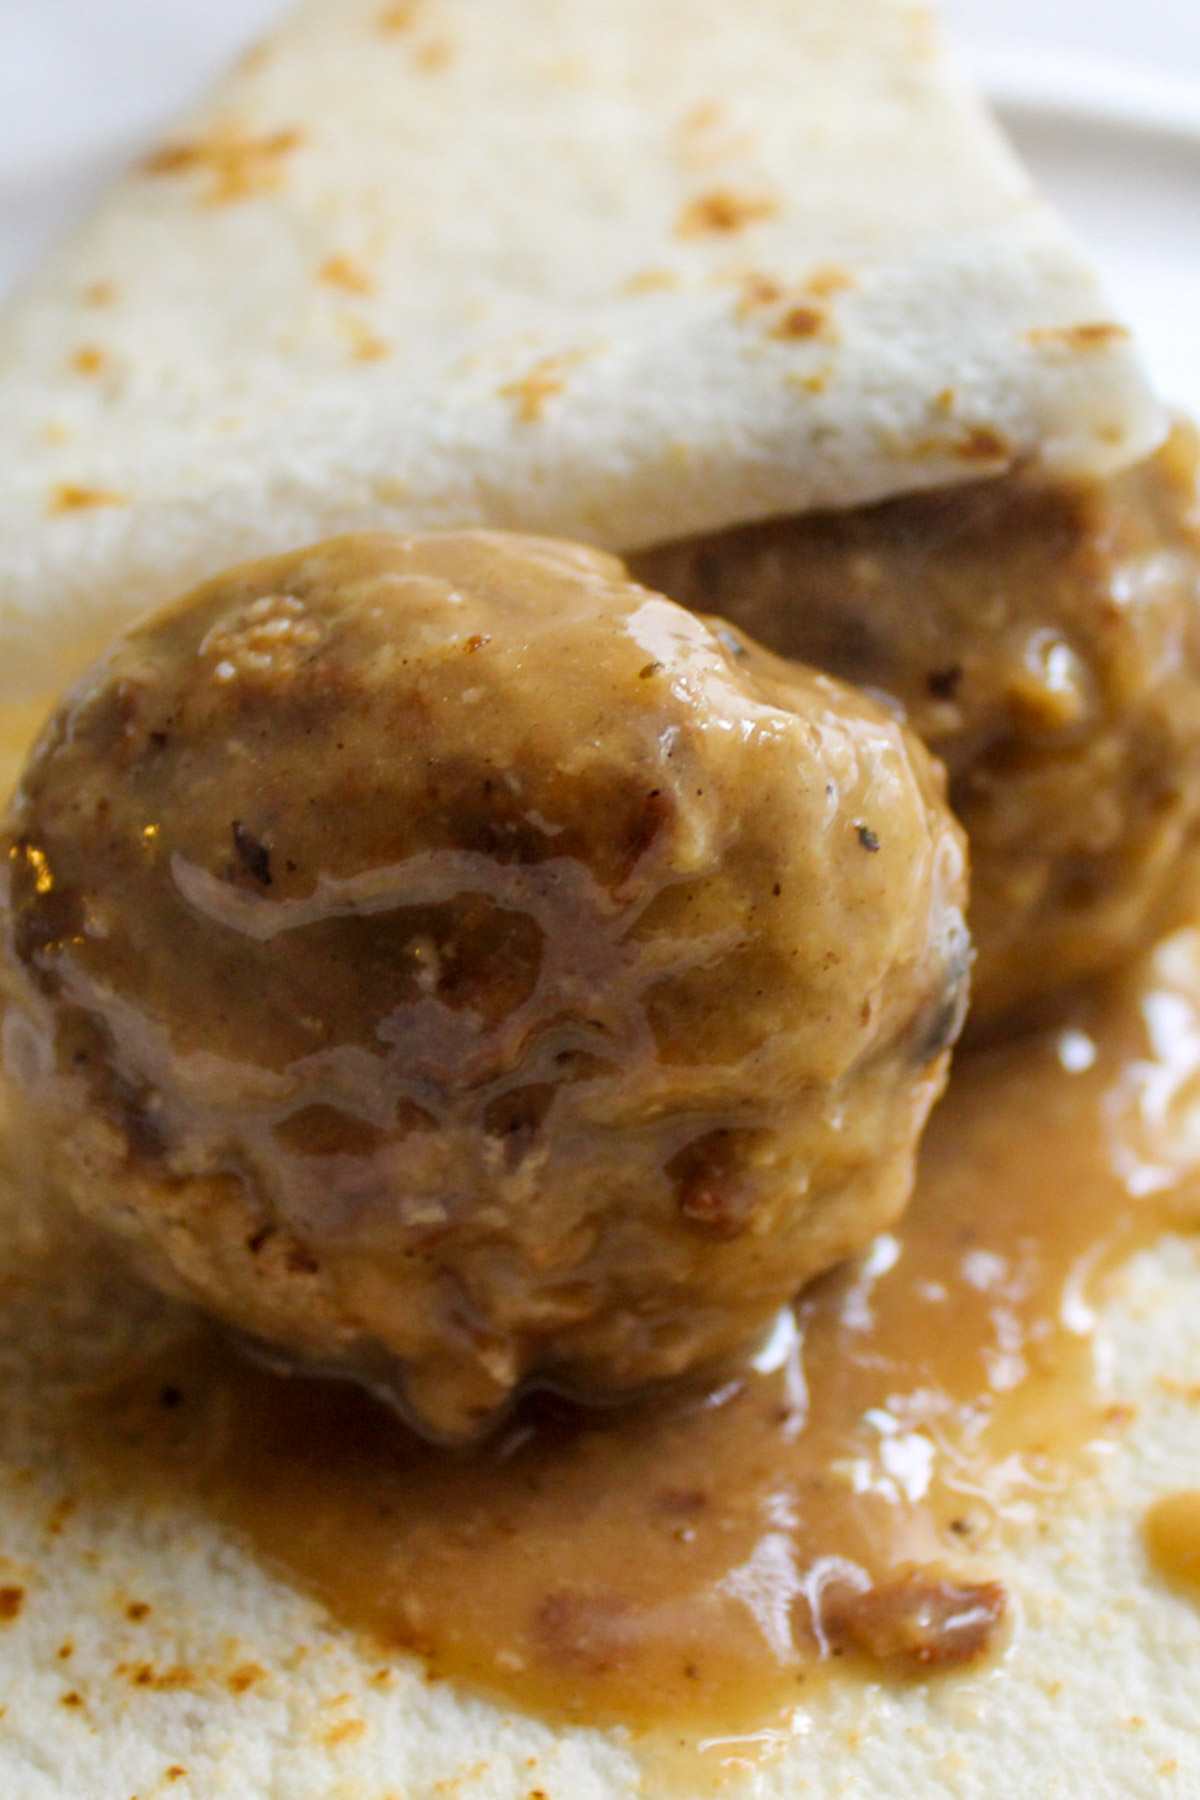 Meatballs in gravy wrapped in lefse.